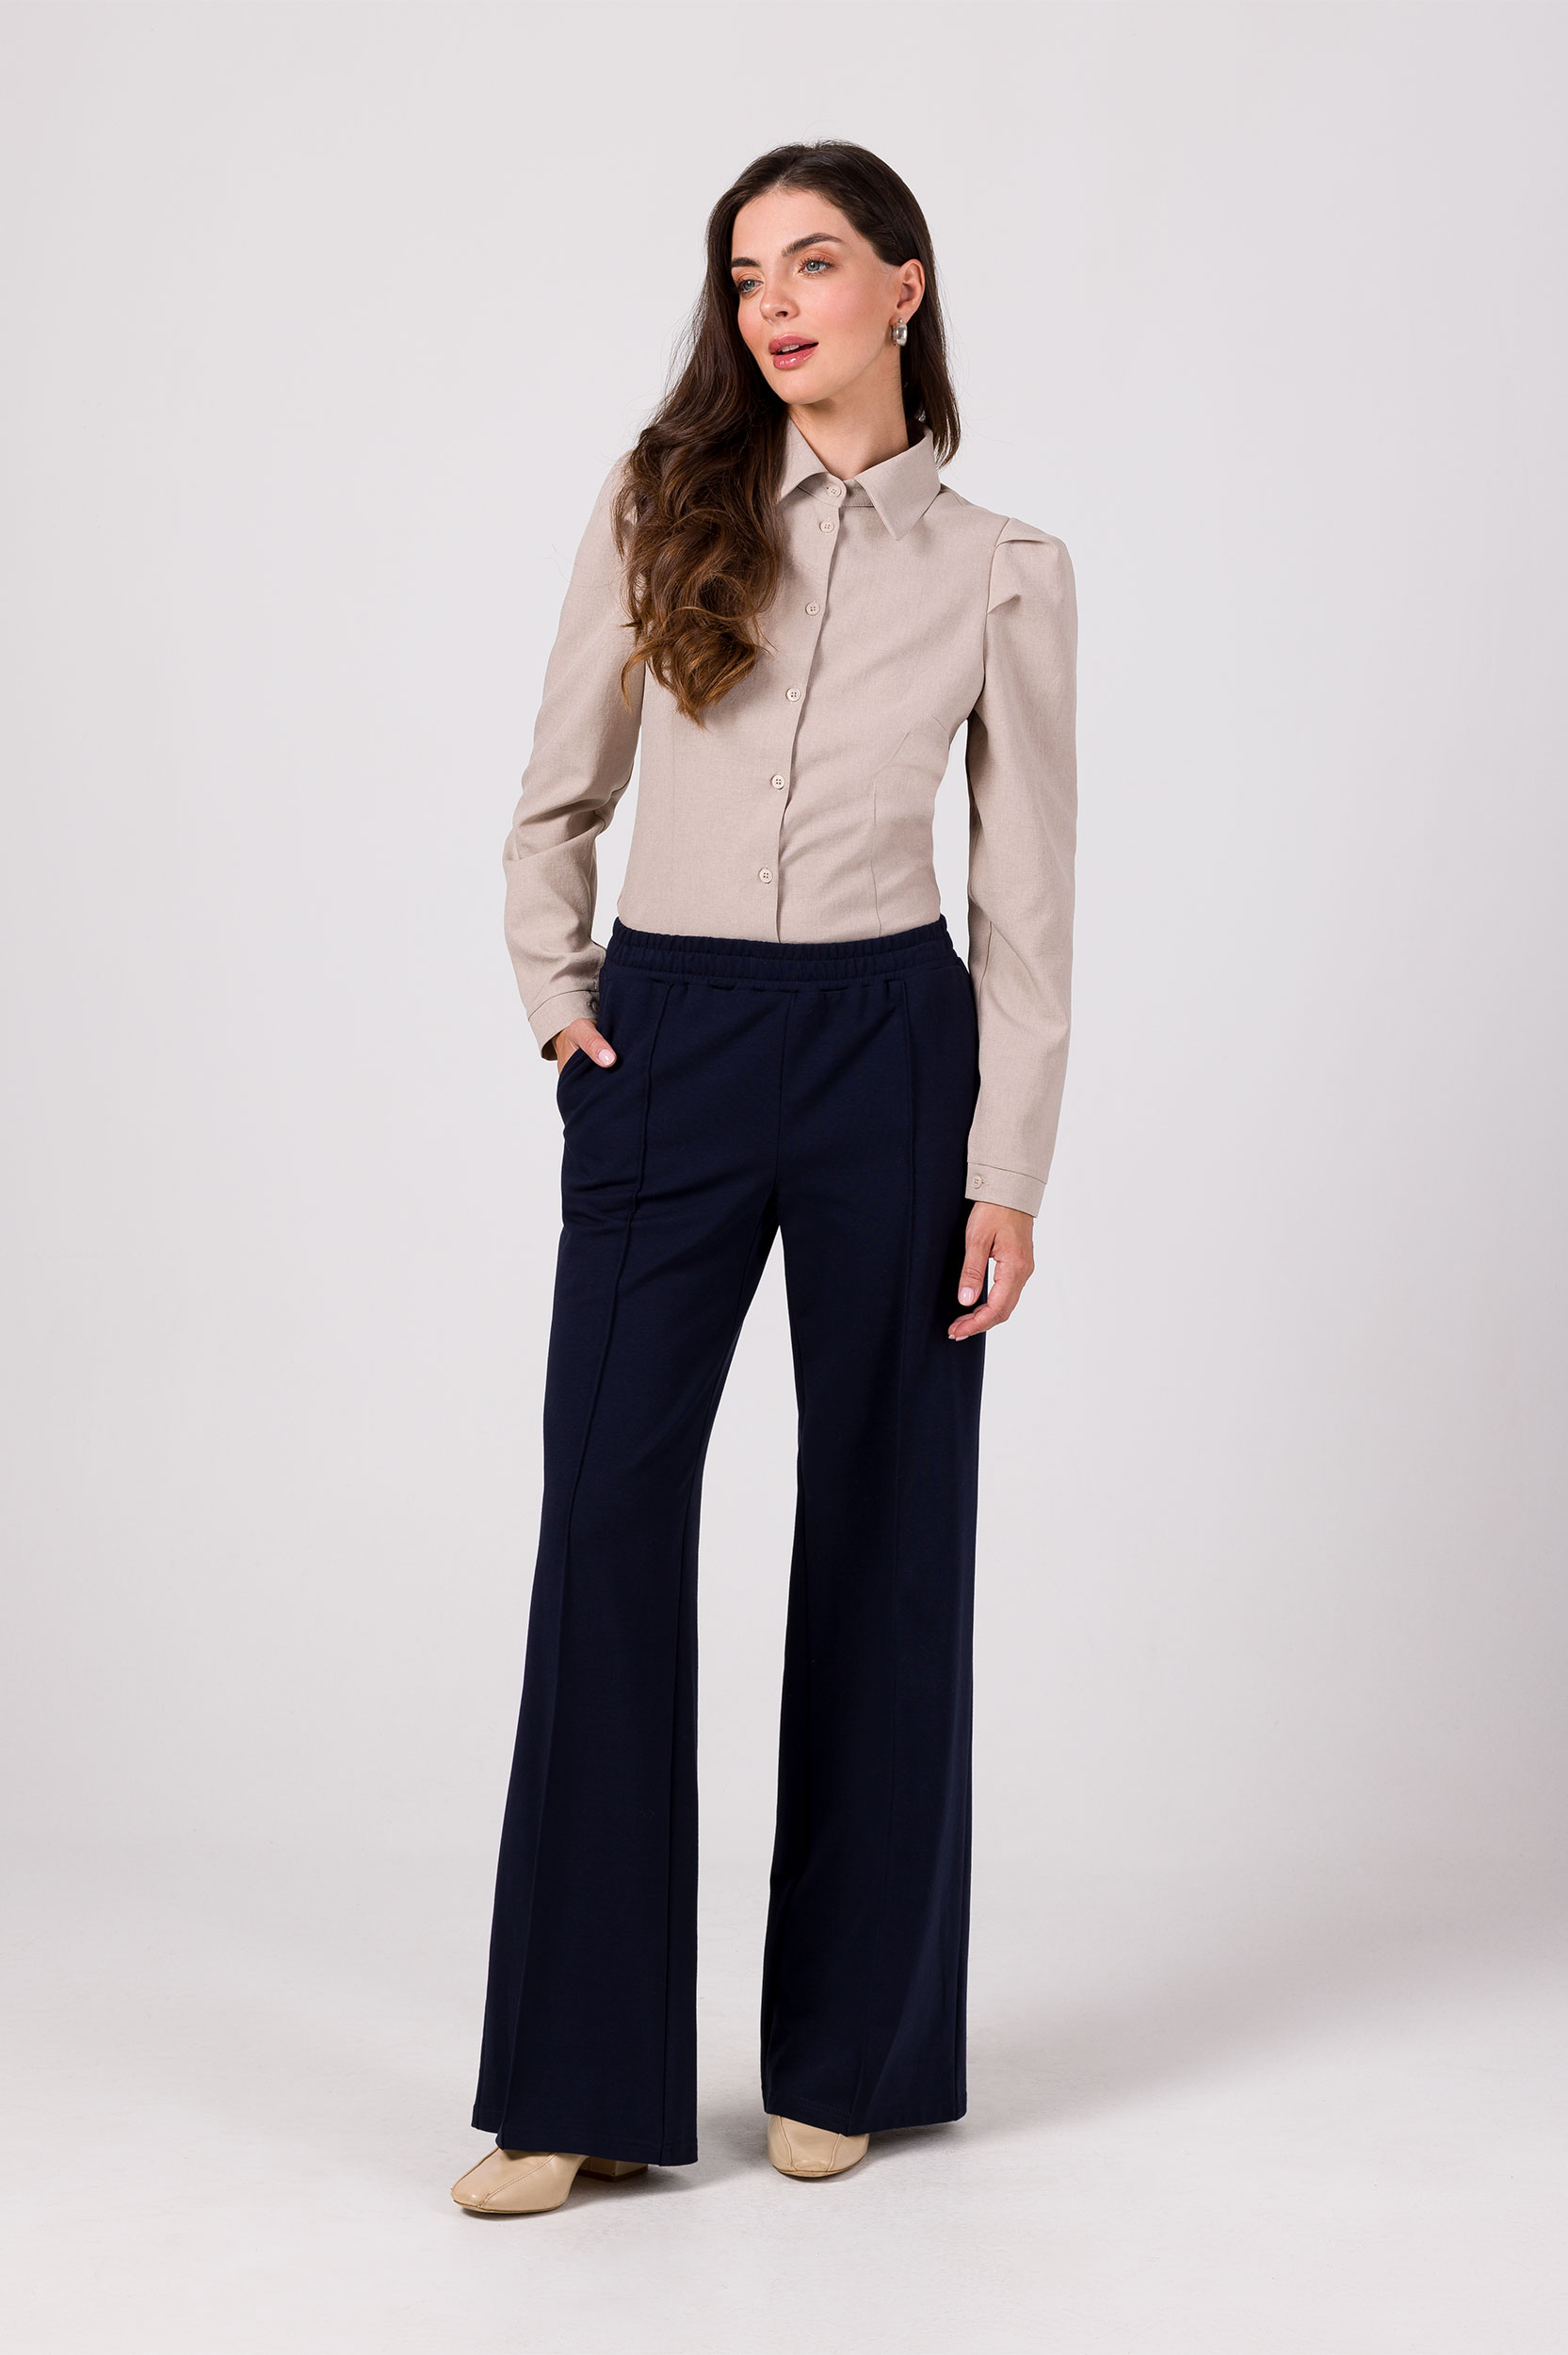 BeWear Woman's Trousers B275 Navy Blue